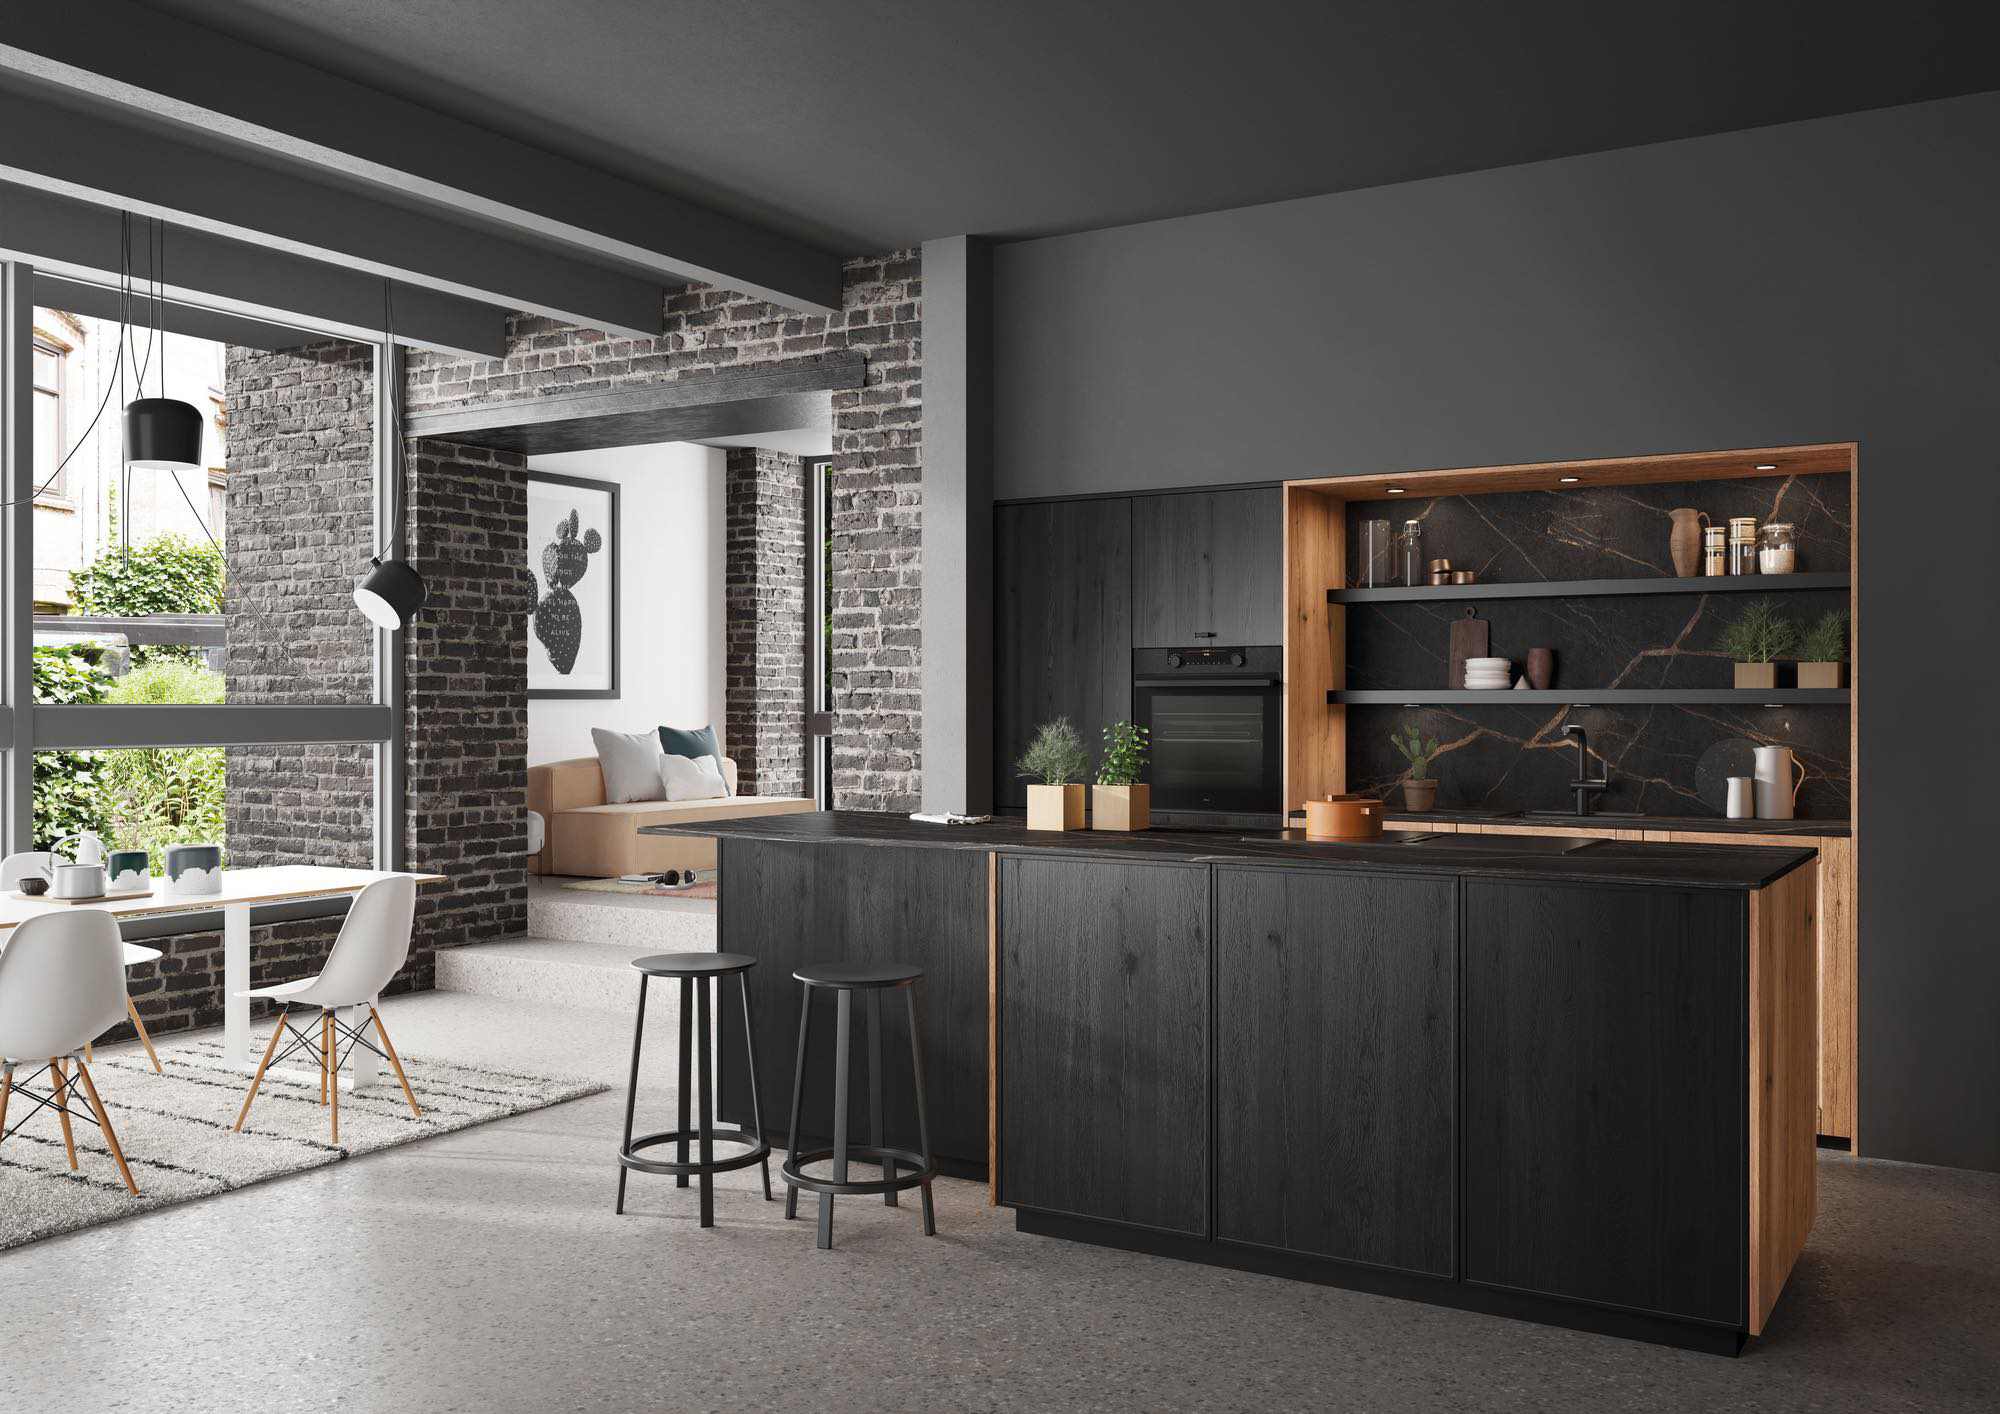 Rotpunkt Dark Wood Kitchen With Island 4 | John Willox Kitchen Design, Ellon